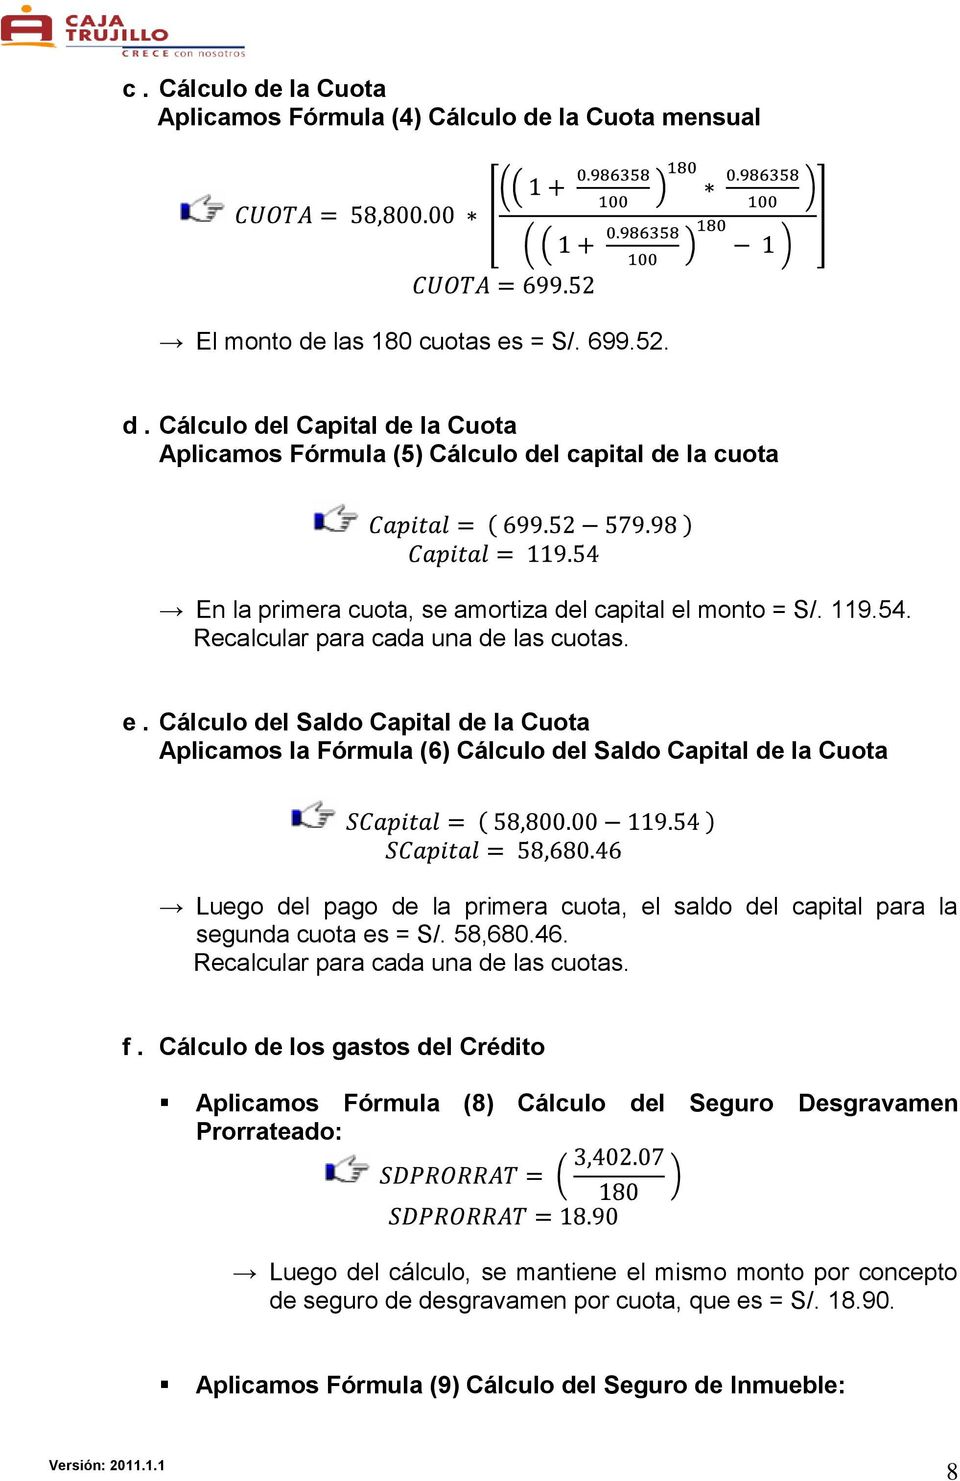 Cálculo del Saldo Capital de la Cuota Aplicamos la Fórmula (6) Cálculo del Saldo Capital de la Cuota Luego del pago de la primera cuota, el saldo del capital para la segunda cuota es = S/. 58,680.46.